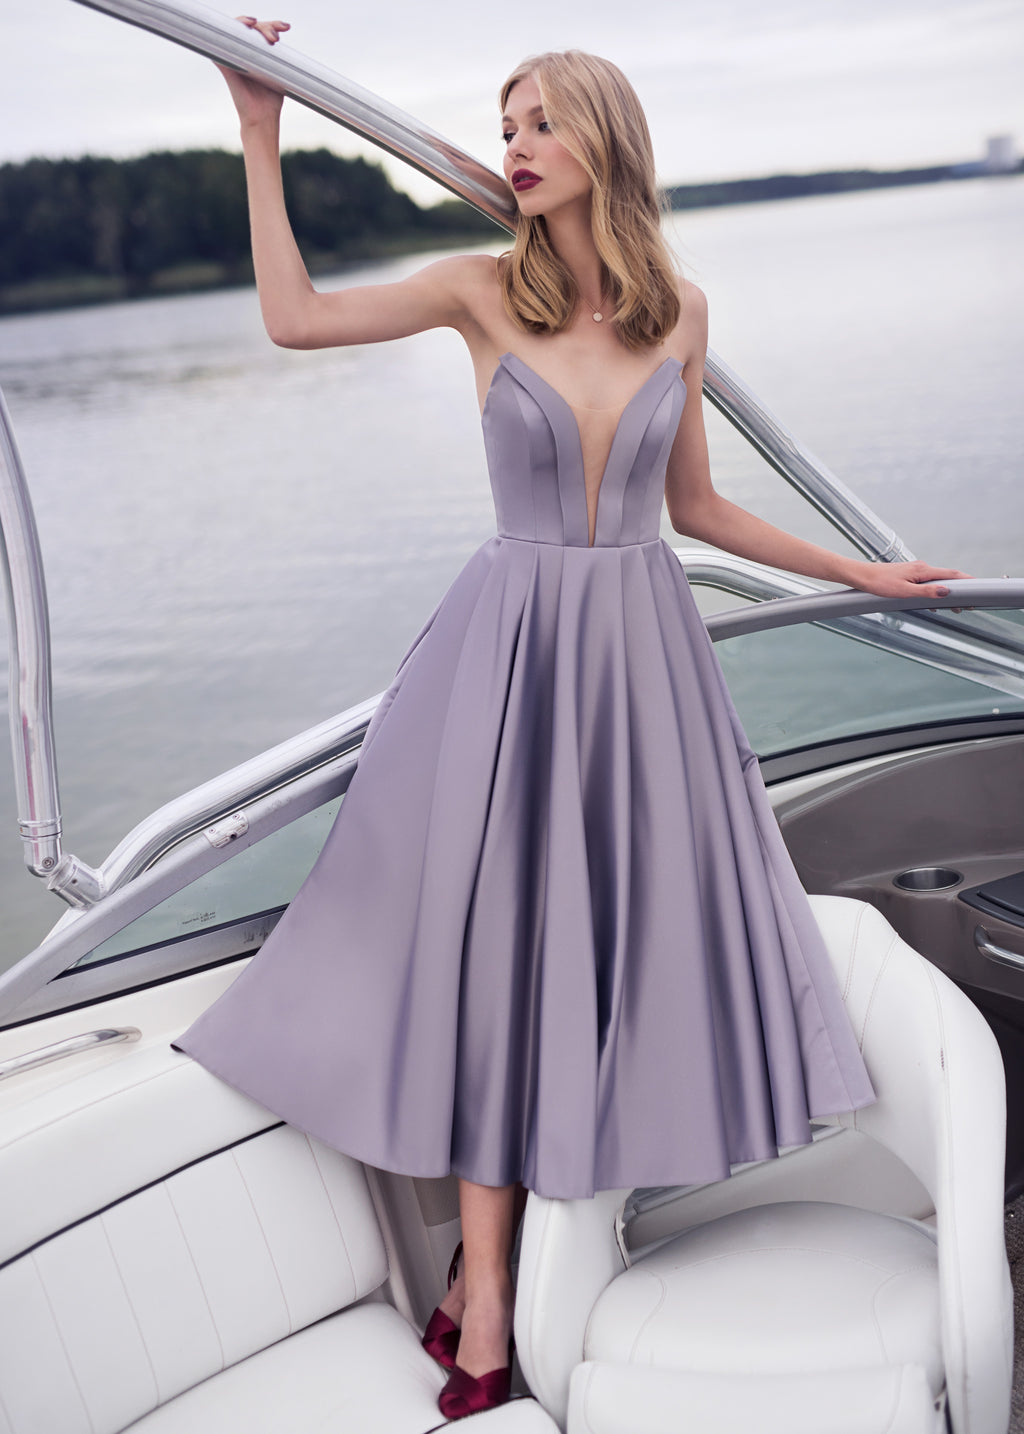 BLANTIE elegant evening dress – I SWEAR YOU